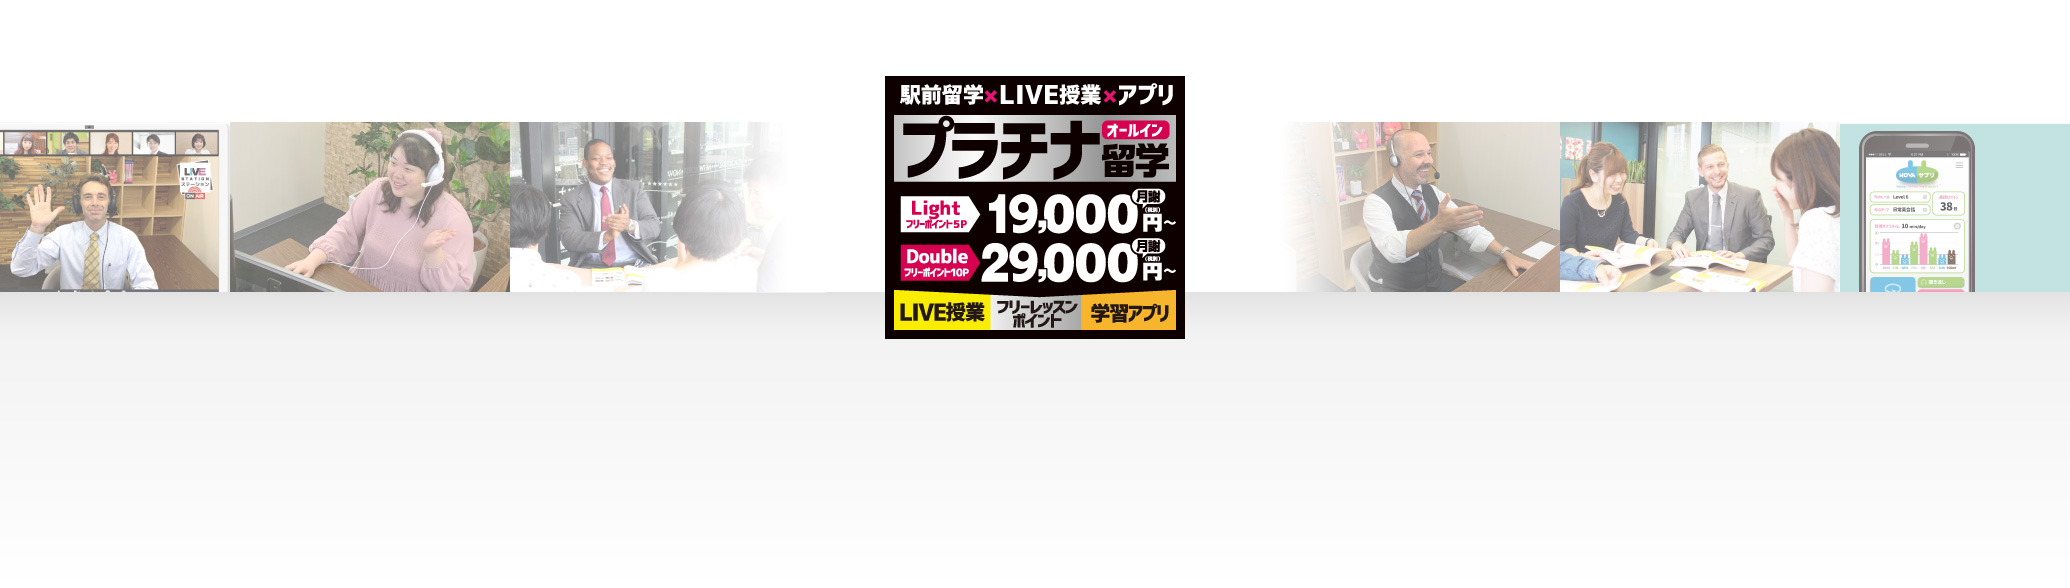 駅前留学×LIVE授業×アプリ